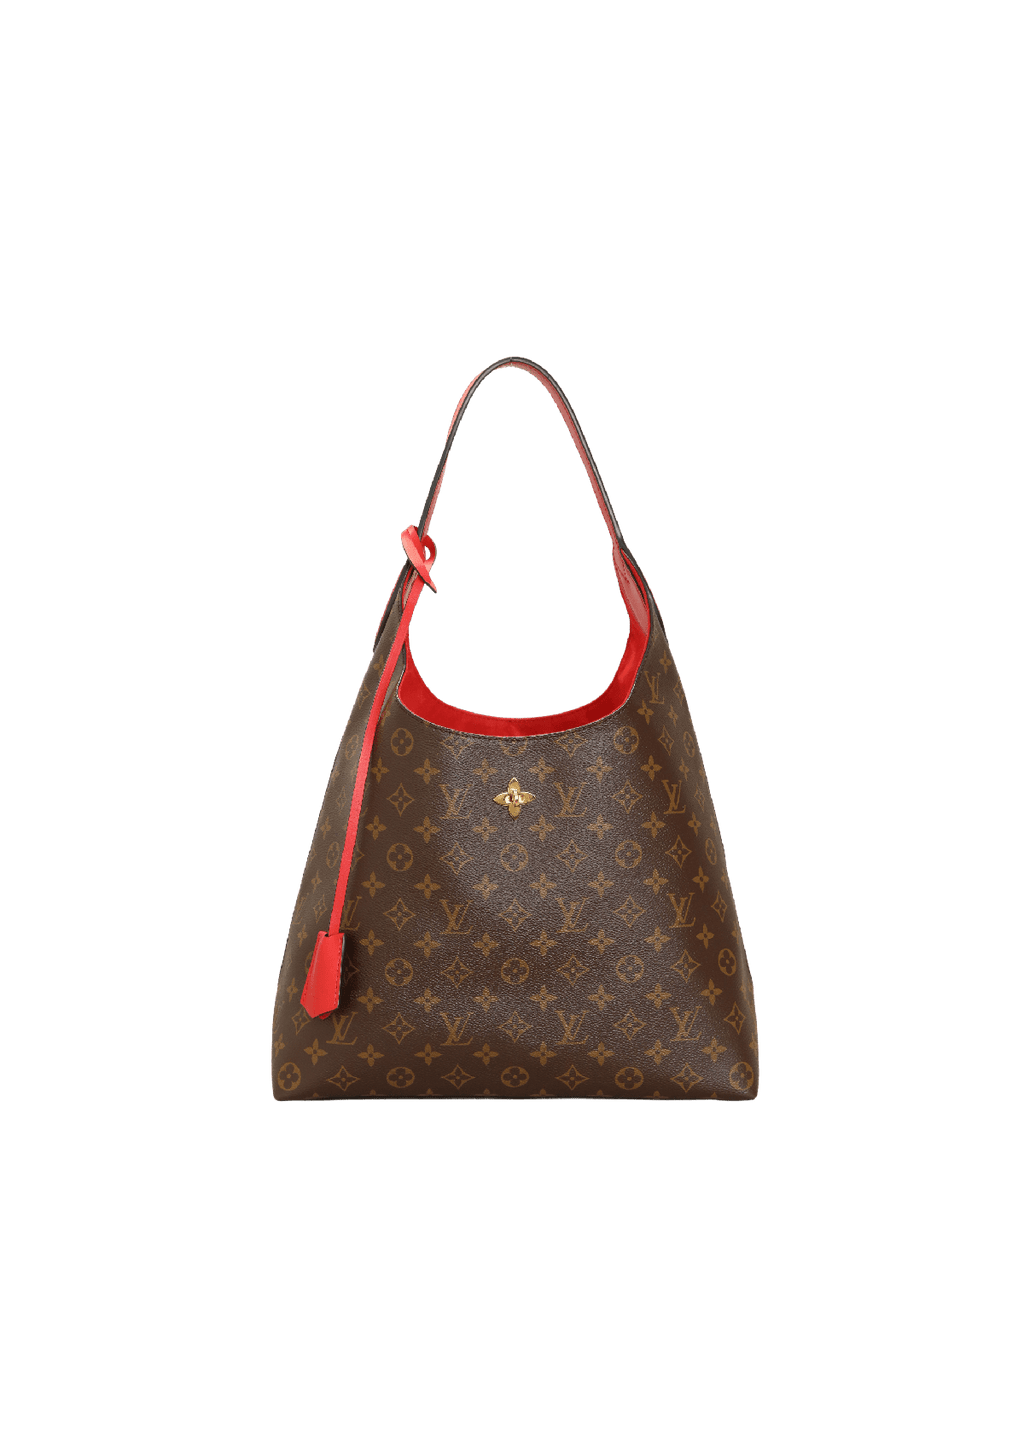 Authentic Louis Vuitton Flower Hobo Bag